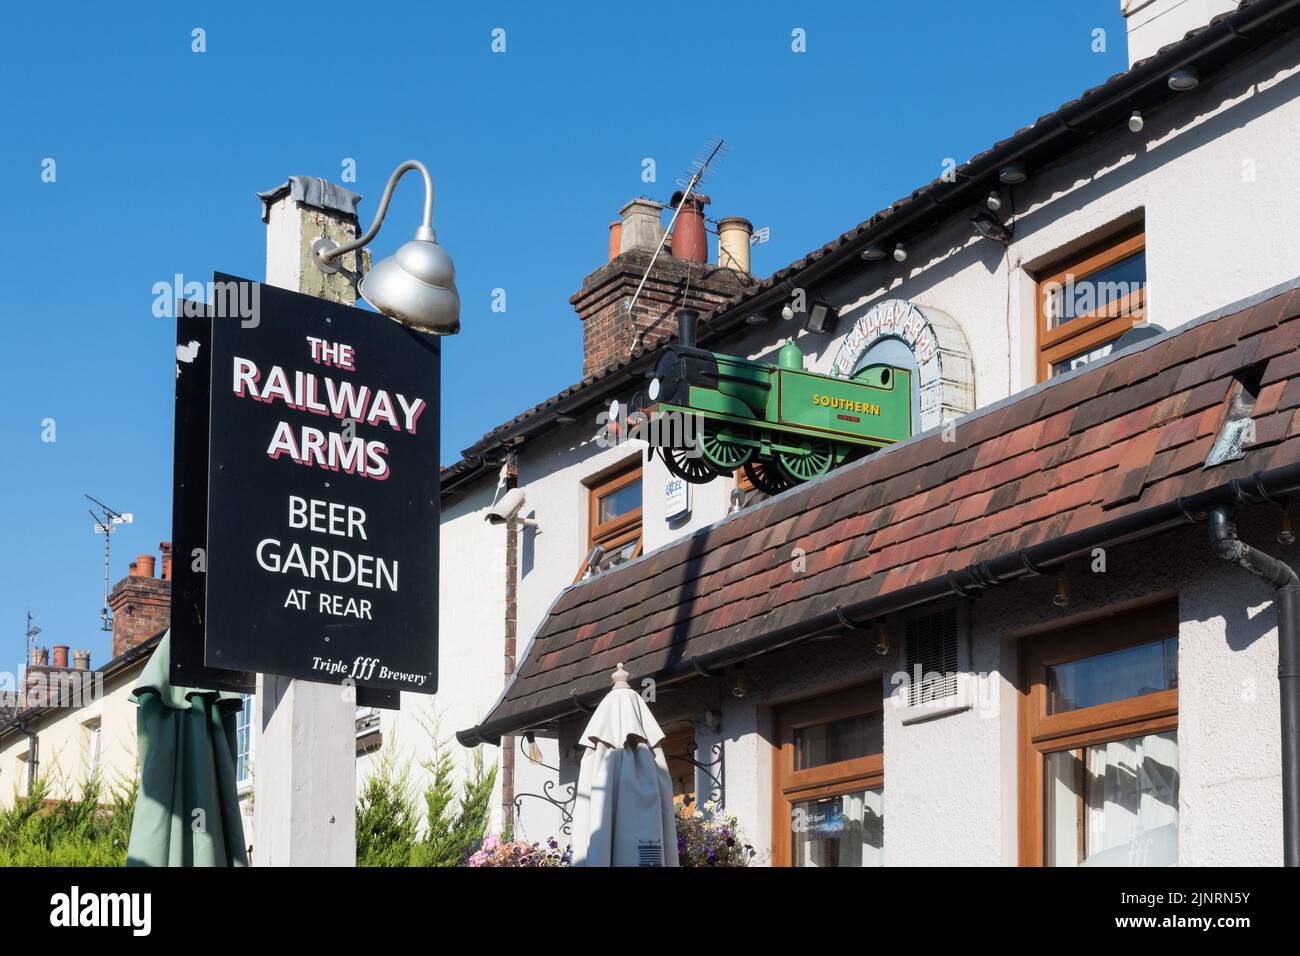 El pub Railway Arms con un tren modelo en la pared, Alton, Hampshire, Inglaterra, Reino Unido Foto de stock